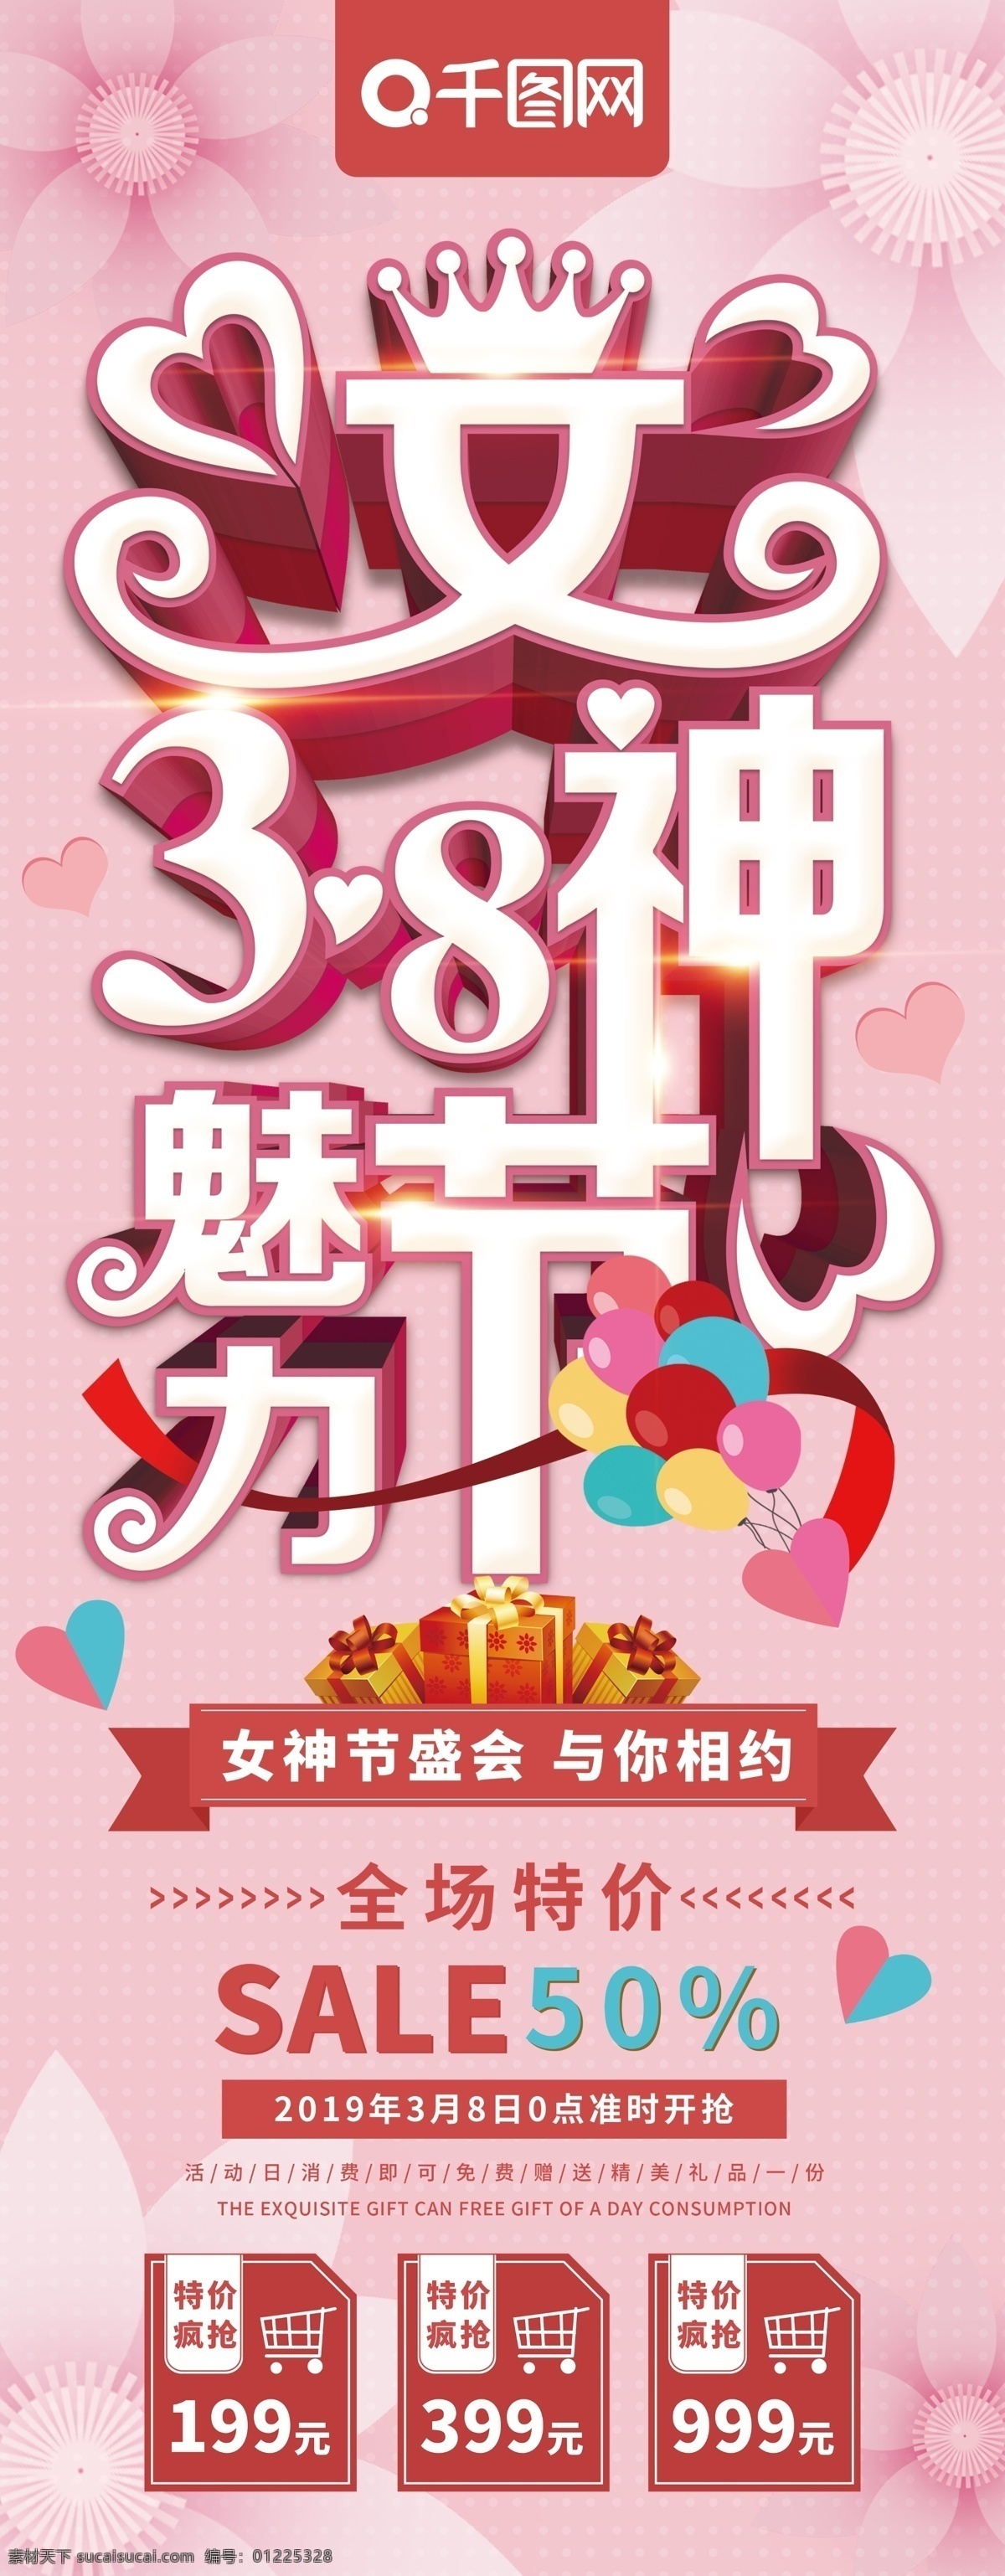 粉色 清新 38 女神 节 妇女节 促销 易拉宝 节日 气球 浪漫 女神节 女王节 女神节促销